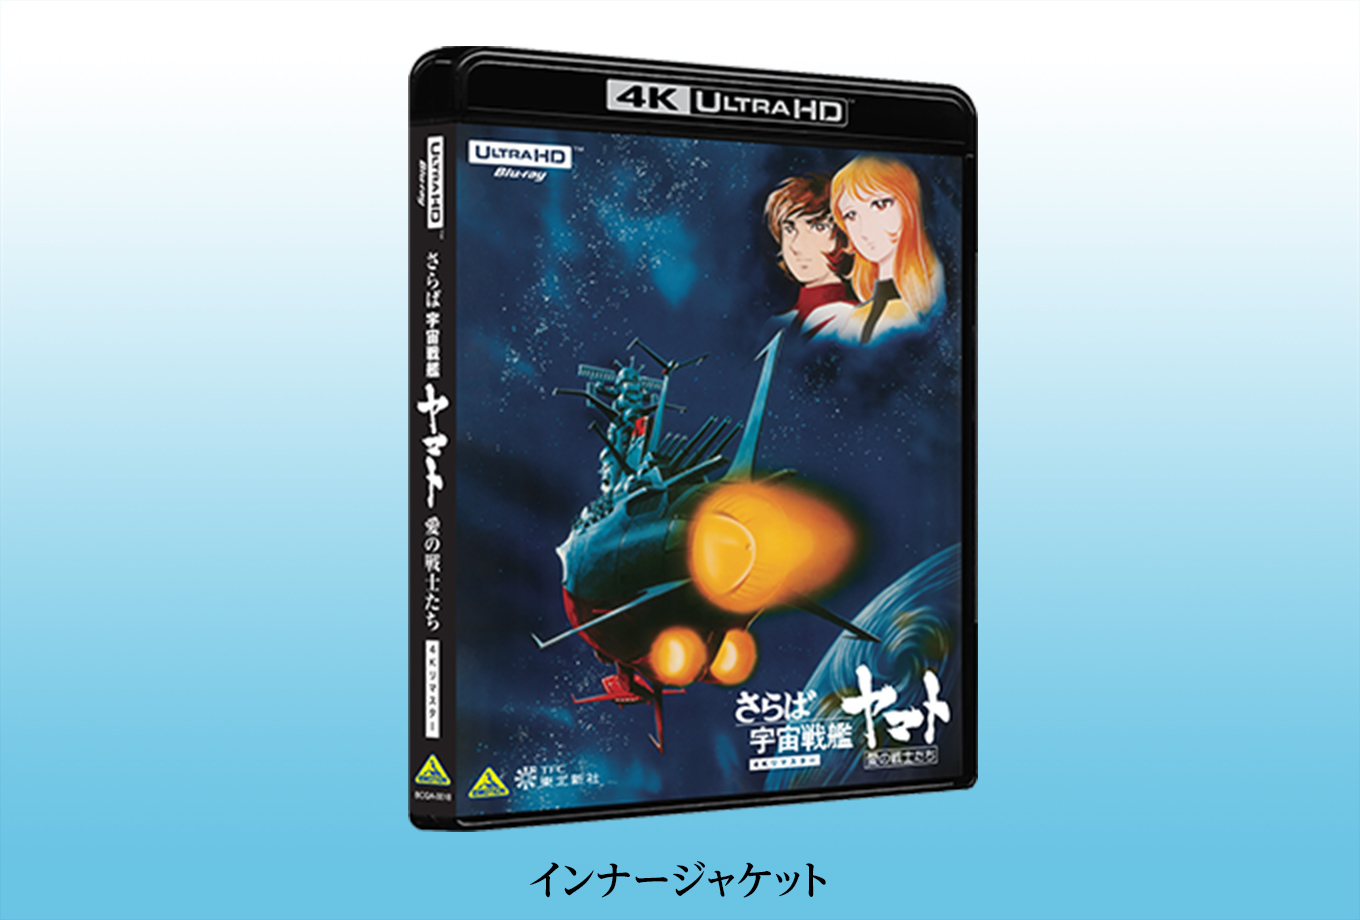 Blu-ray┃宇宙戦艦ヤマト 劇場版 4Kリマスター┃さらば宇宙戦艦ヤマト 